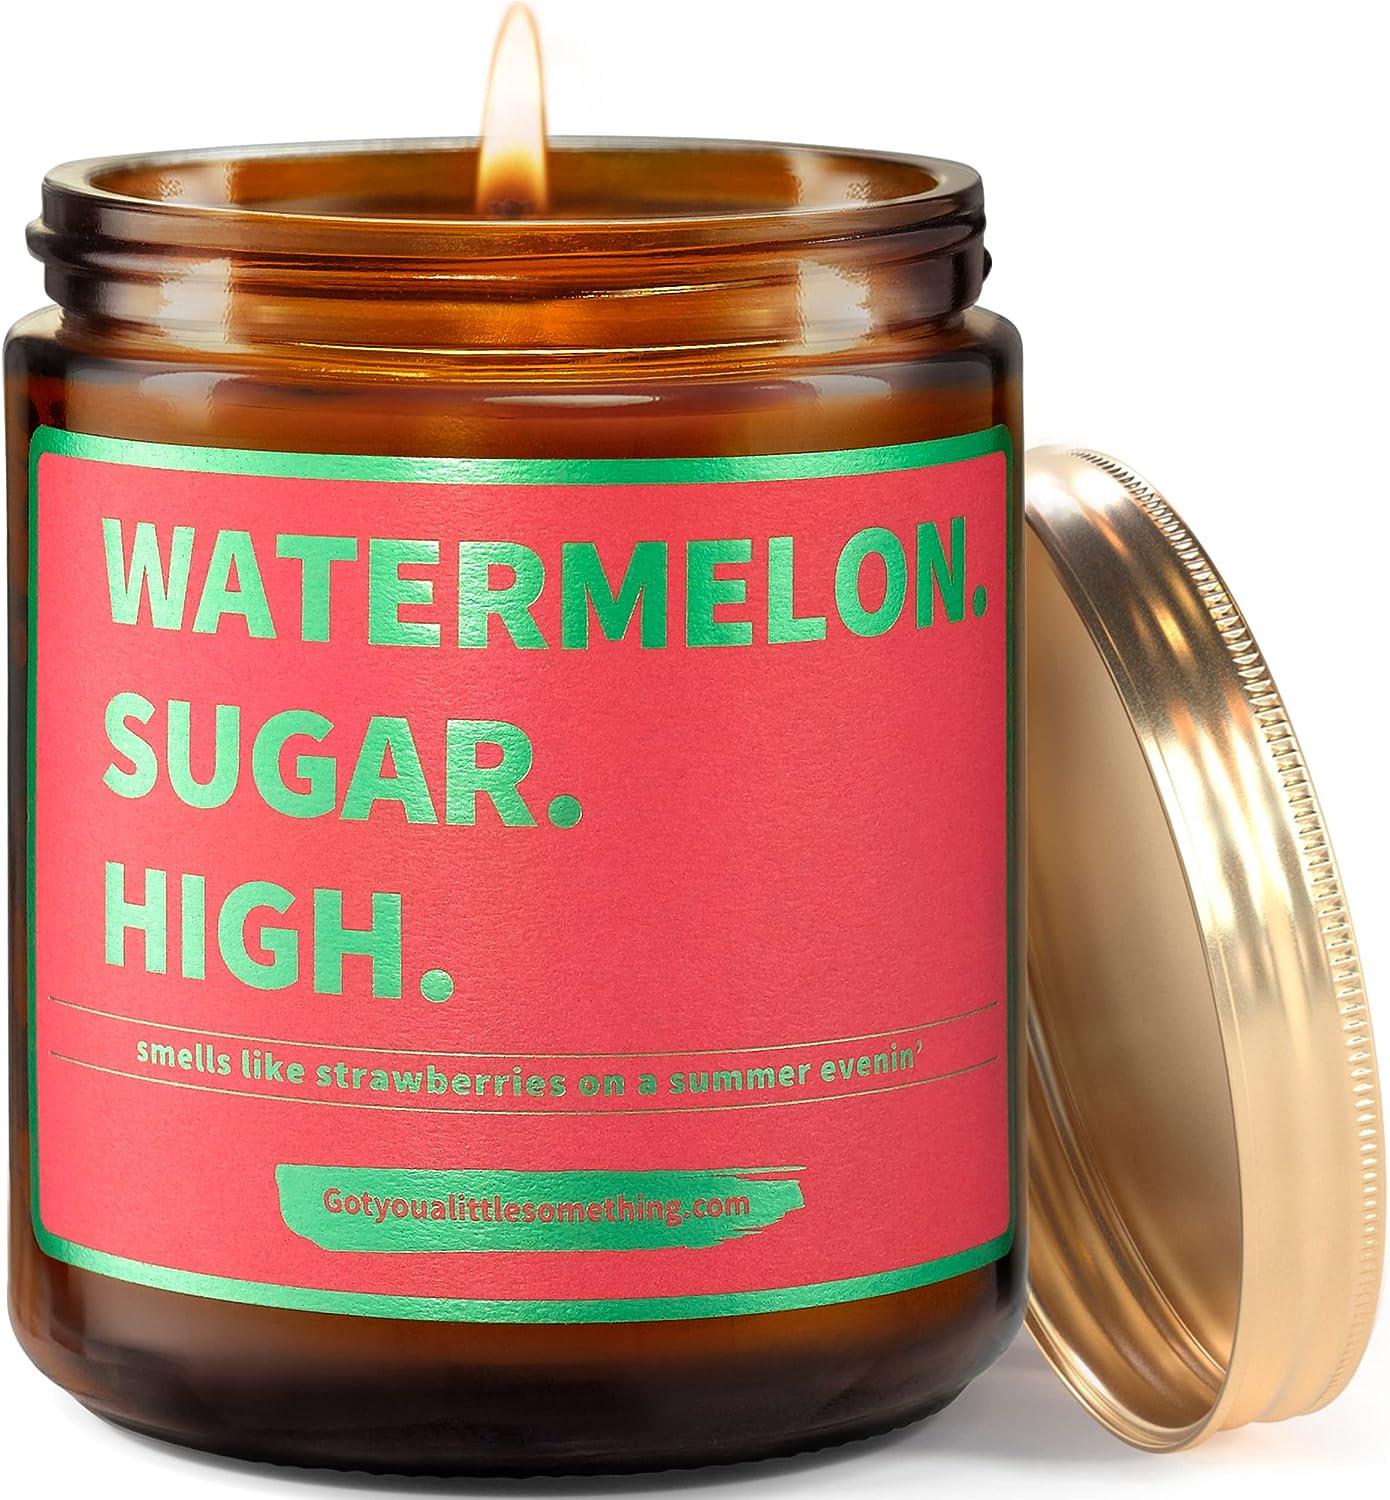 Ljus som heter "Watermelon. Sugar. High."